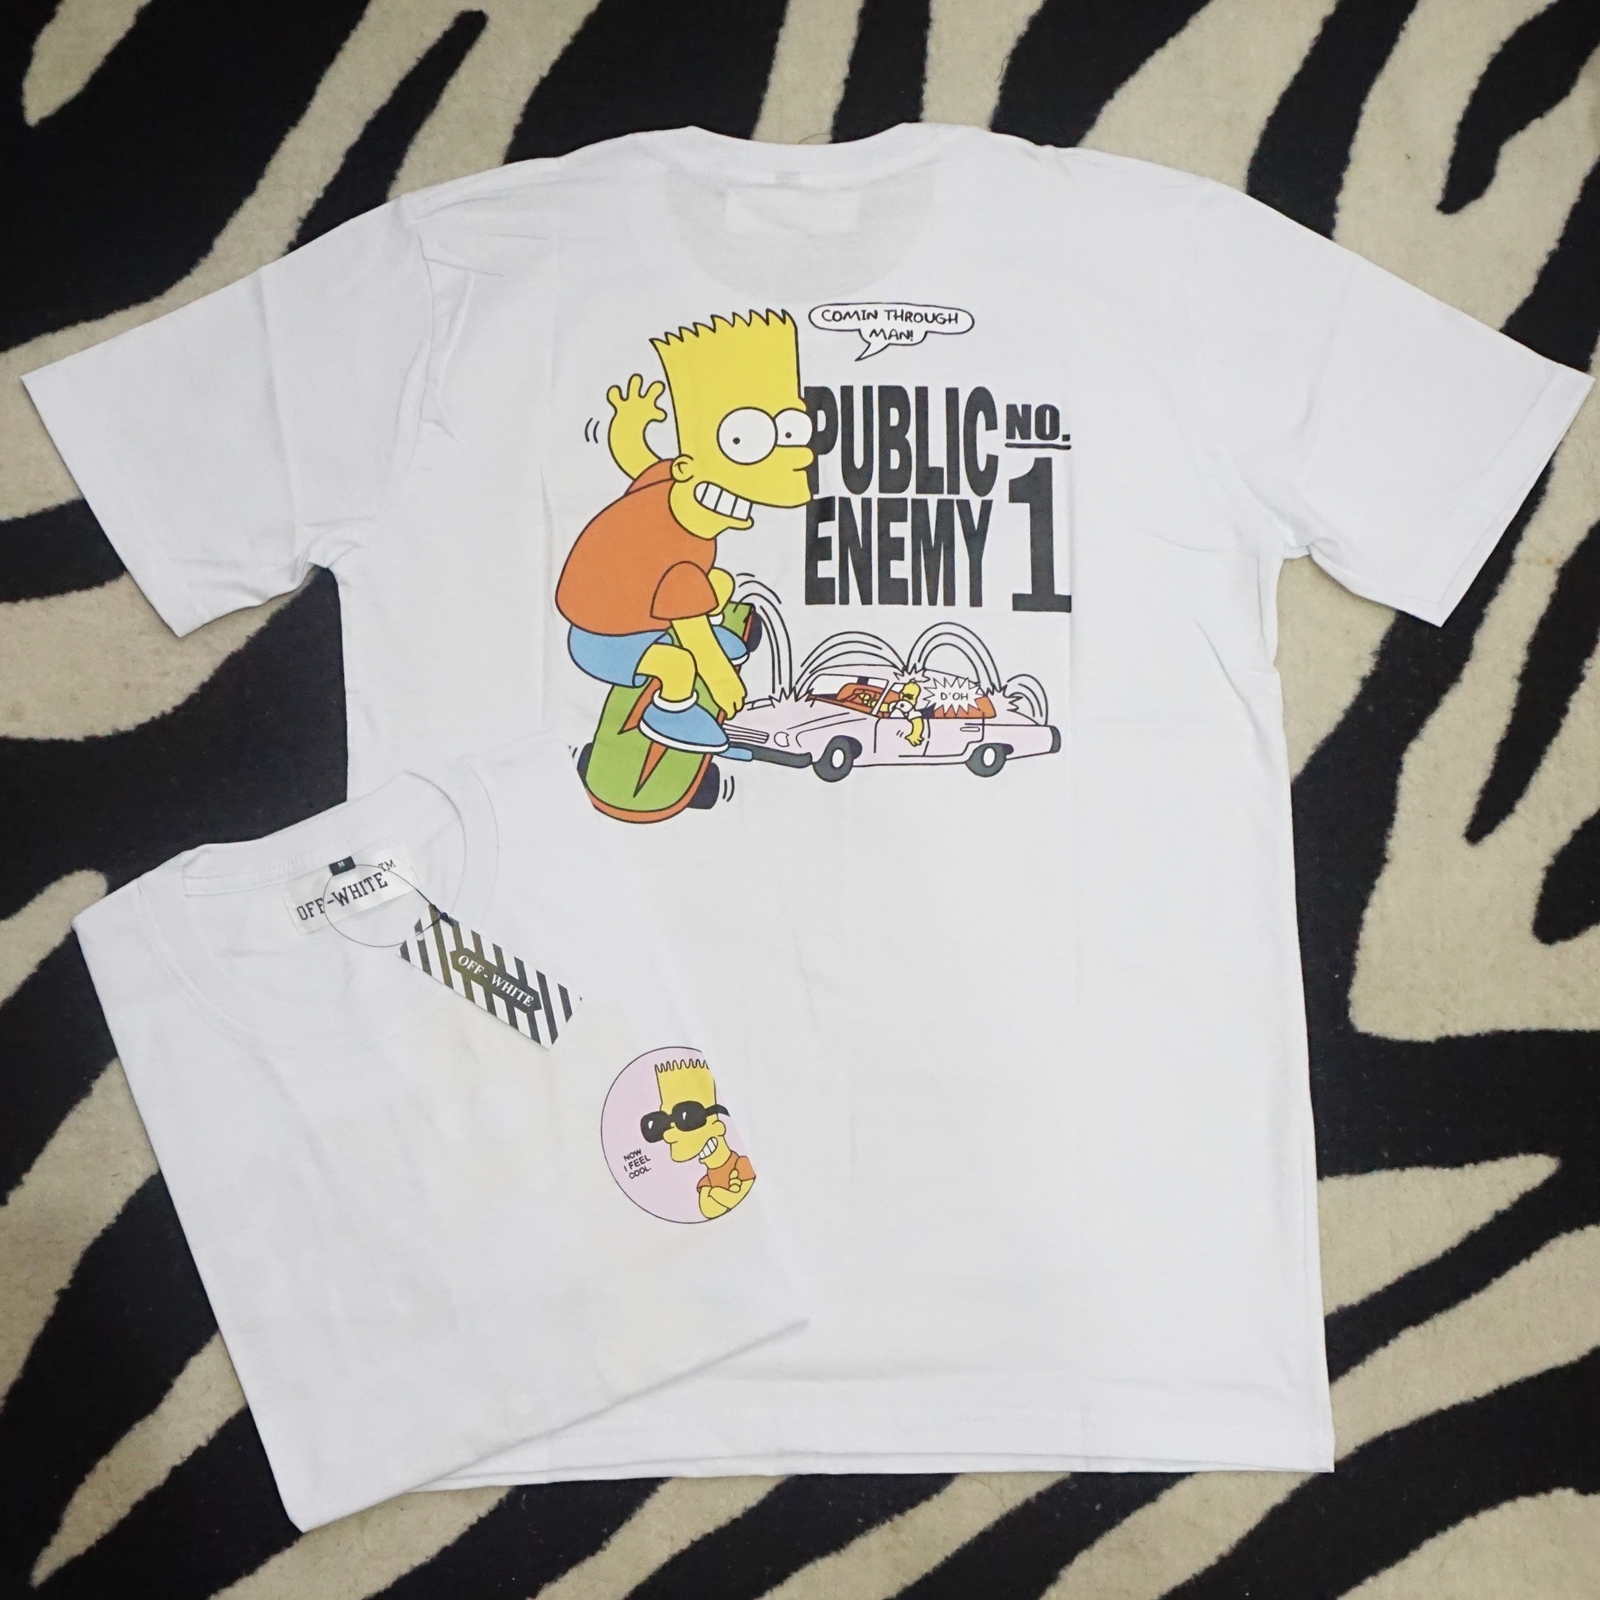 Kaos Tshirt Off White Bart Public Enemy No.1 The Simpsons Tee ...